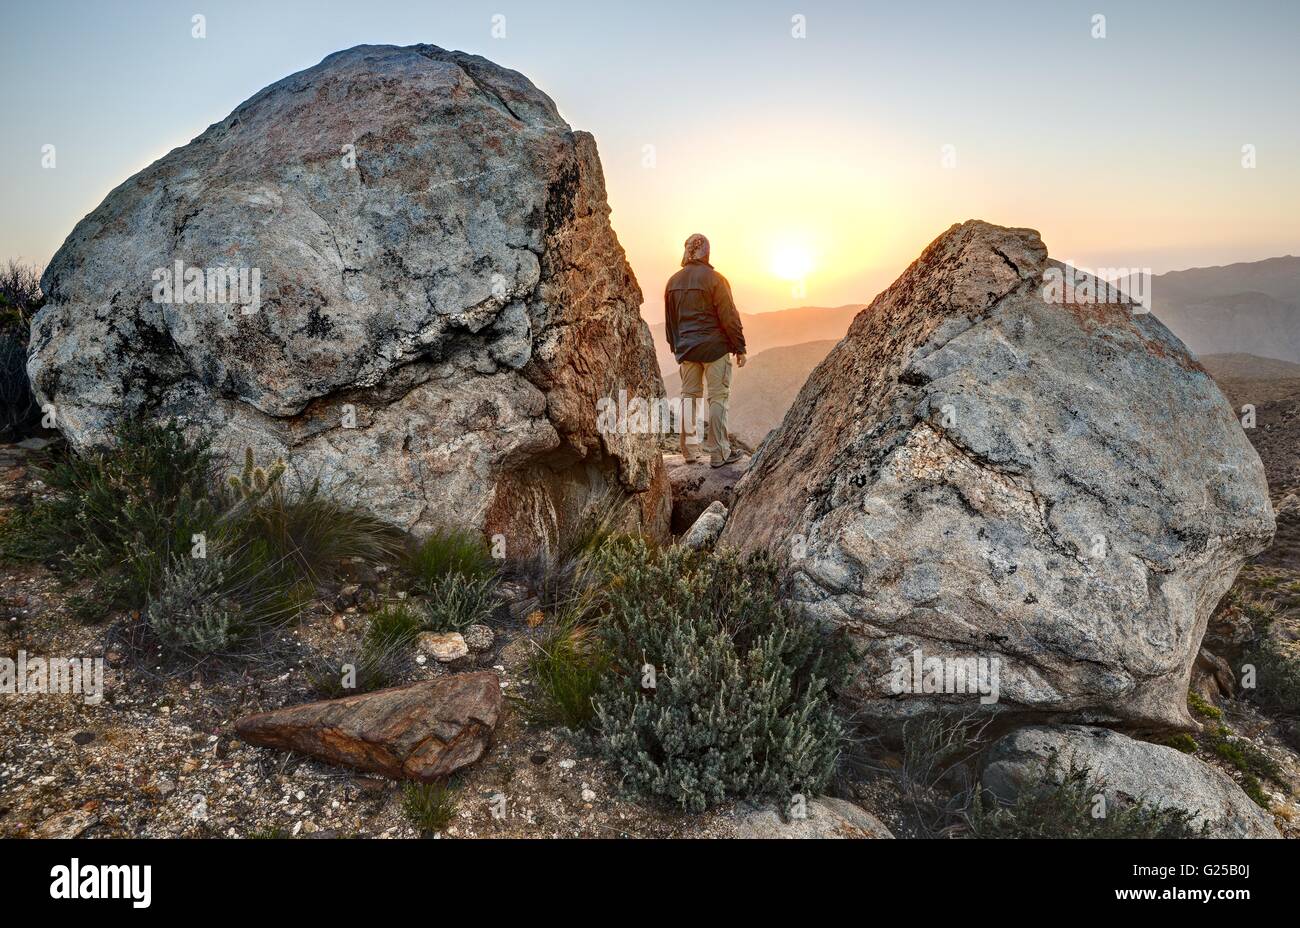 Uomo in cima alla montagna, McCain Valley, California, Stati Uniti Foto Stock